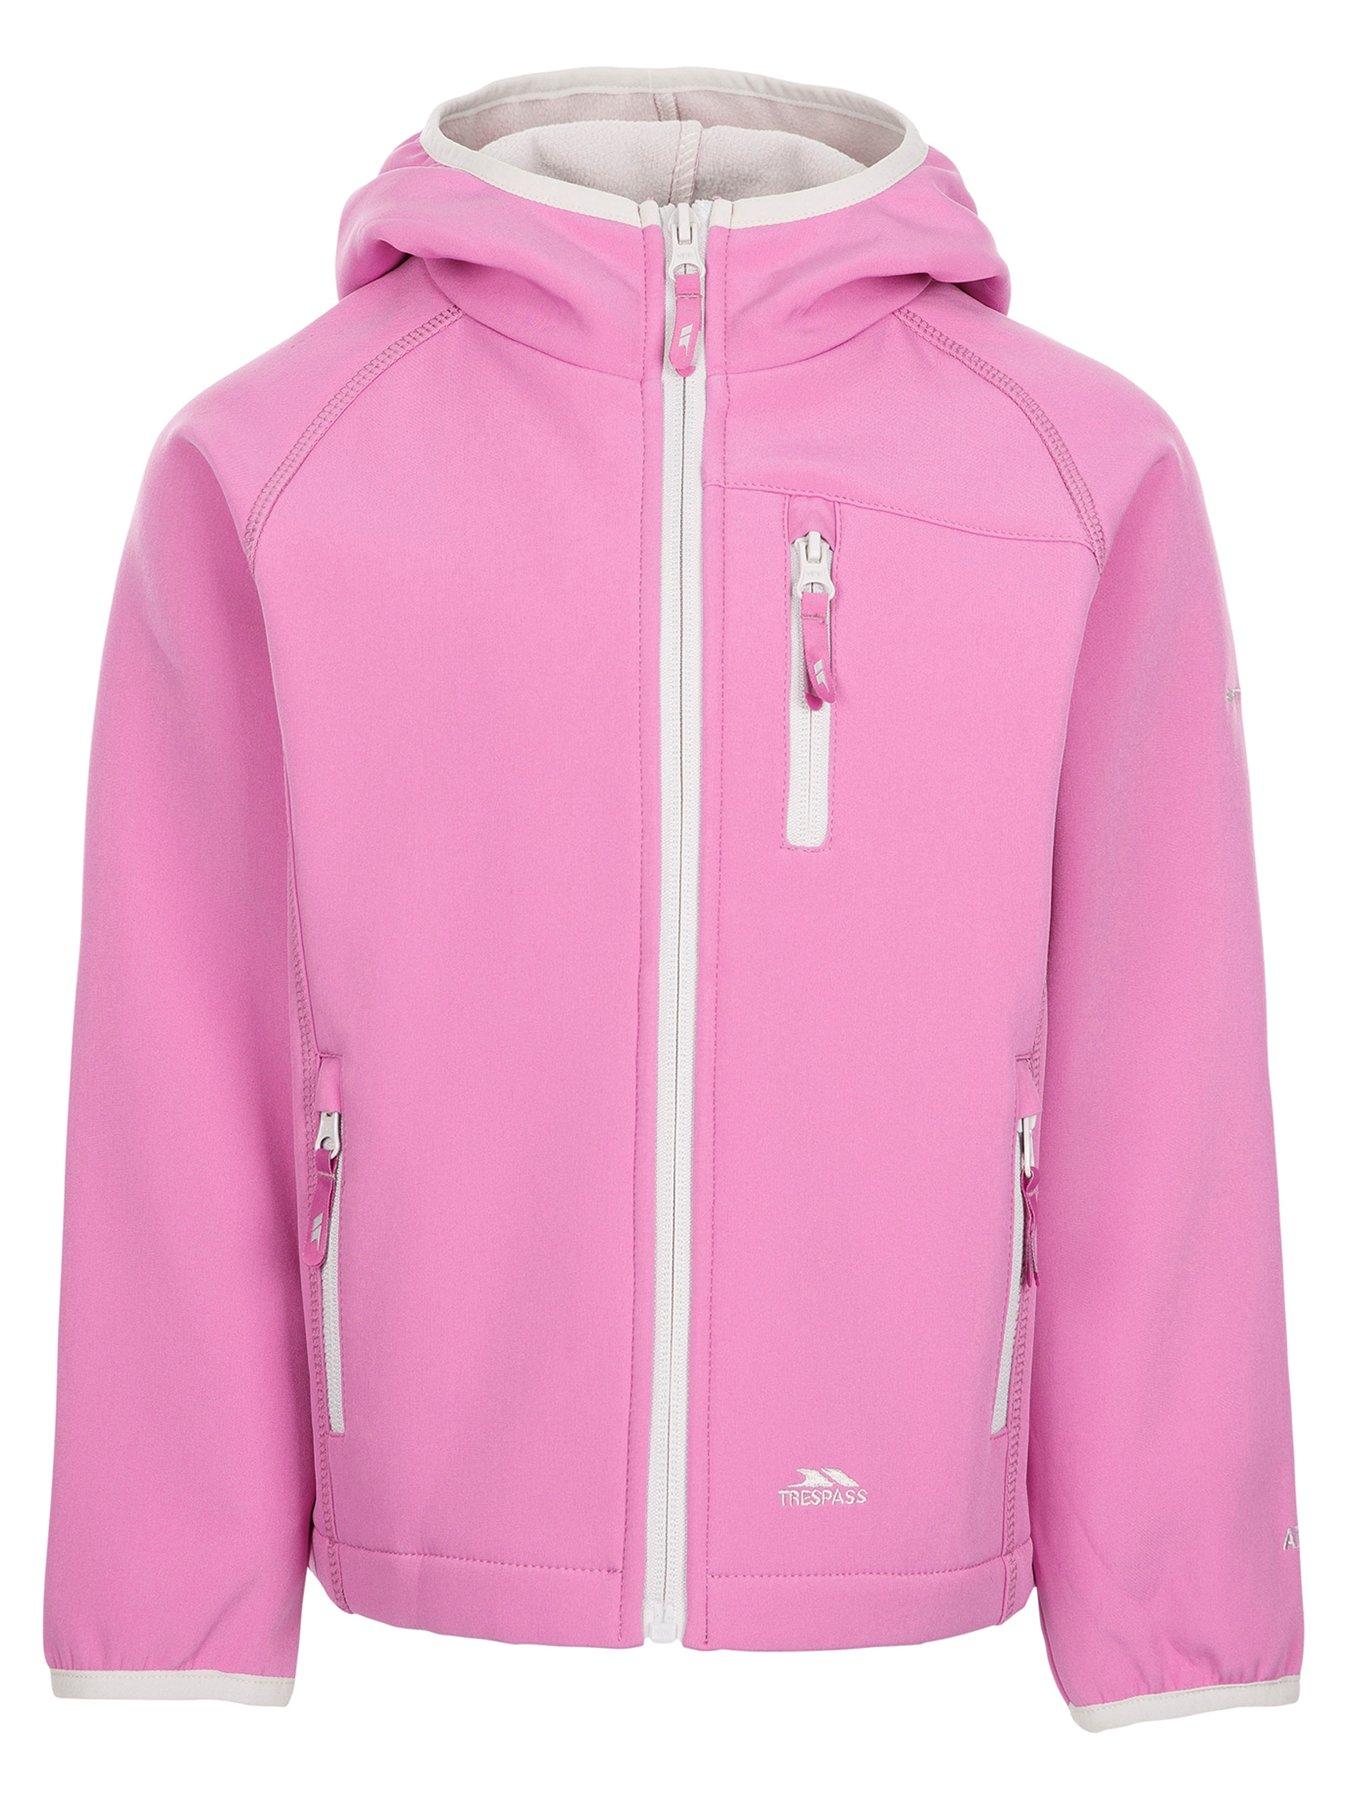 Croker Irish Chick Pink Zip Jacket girl womens shirt 